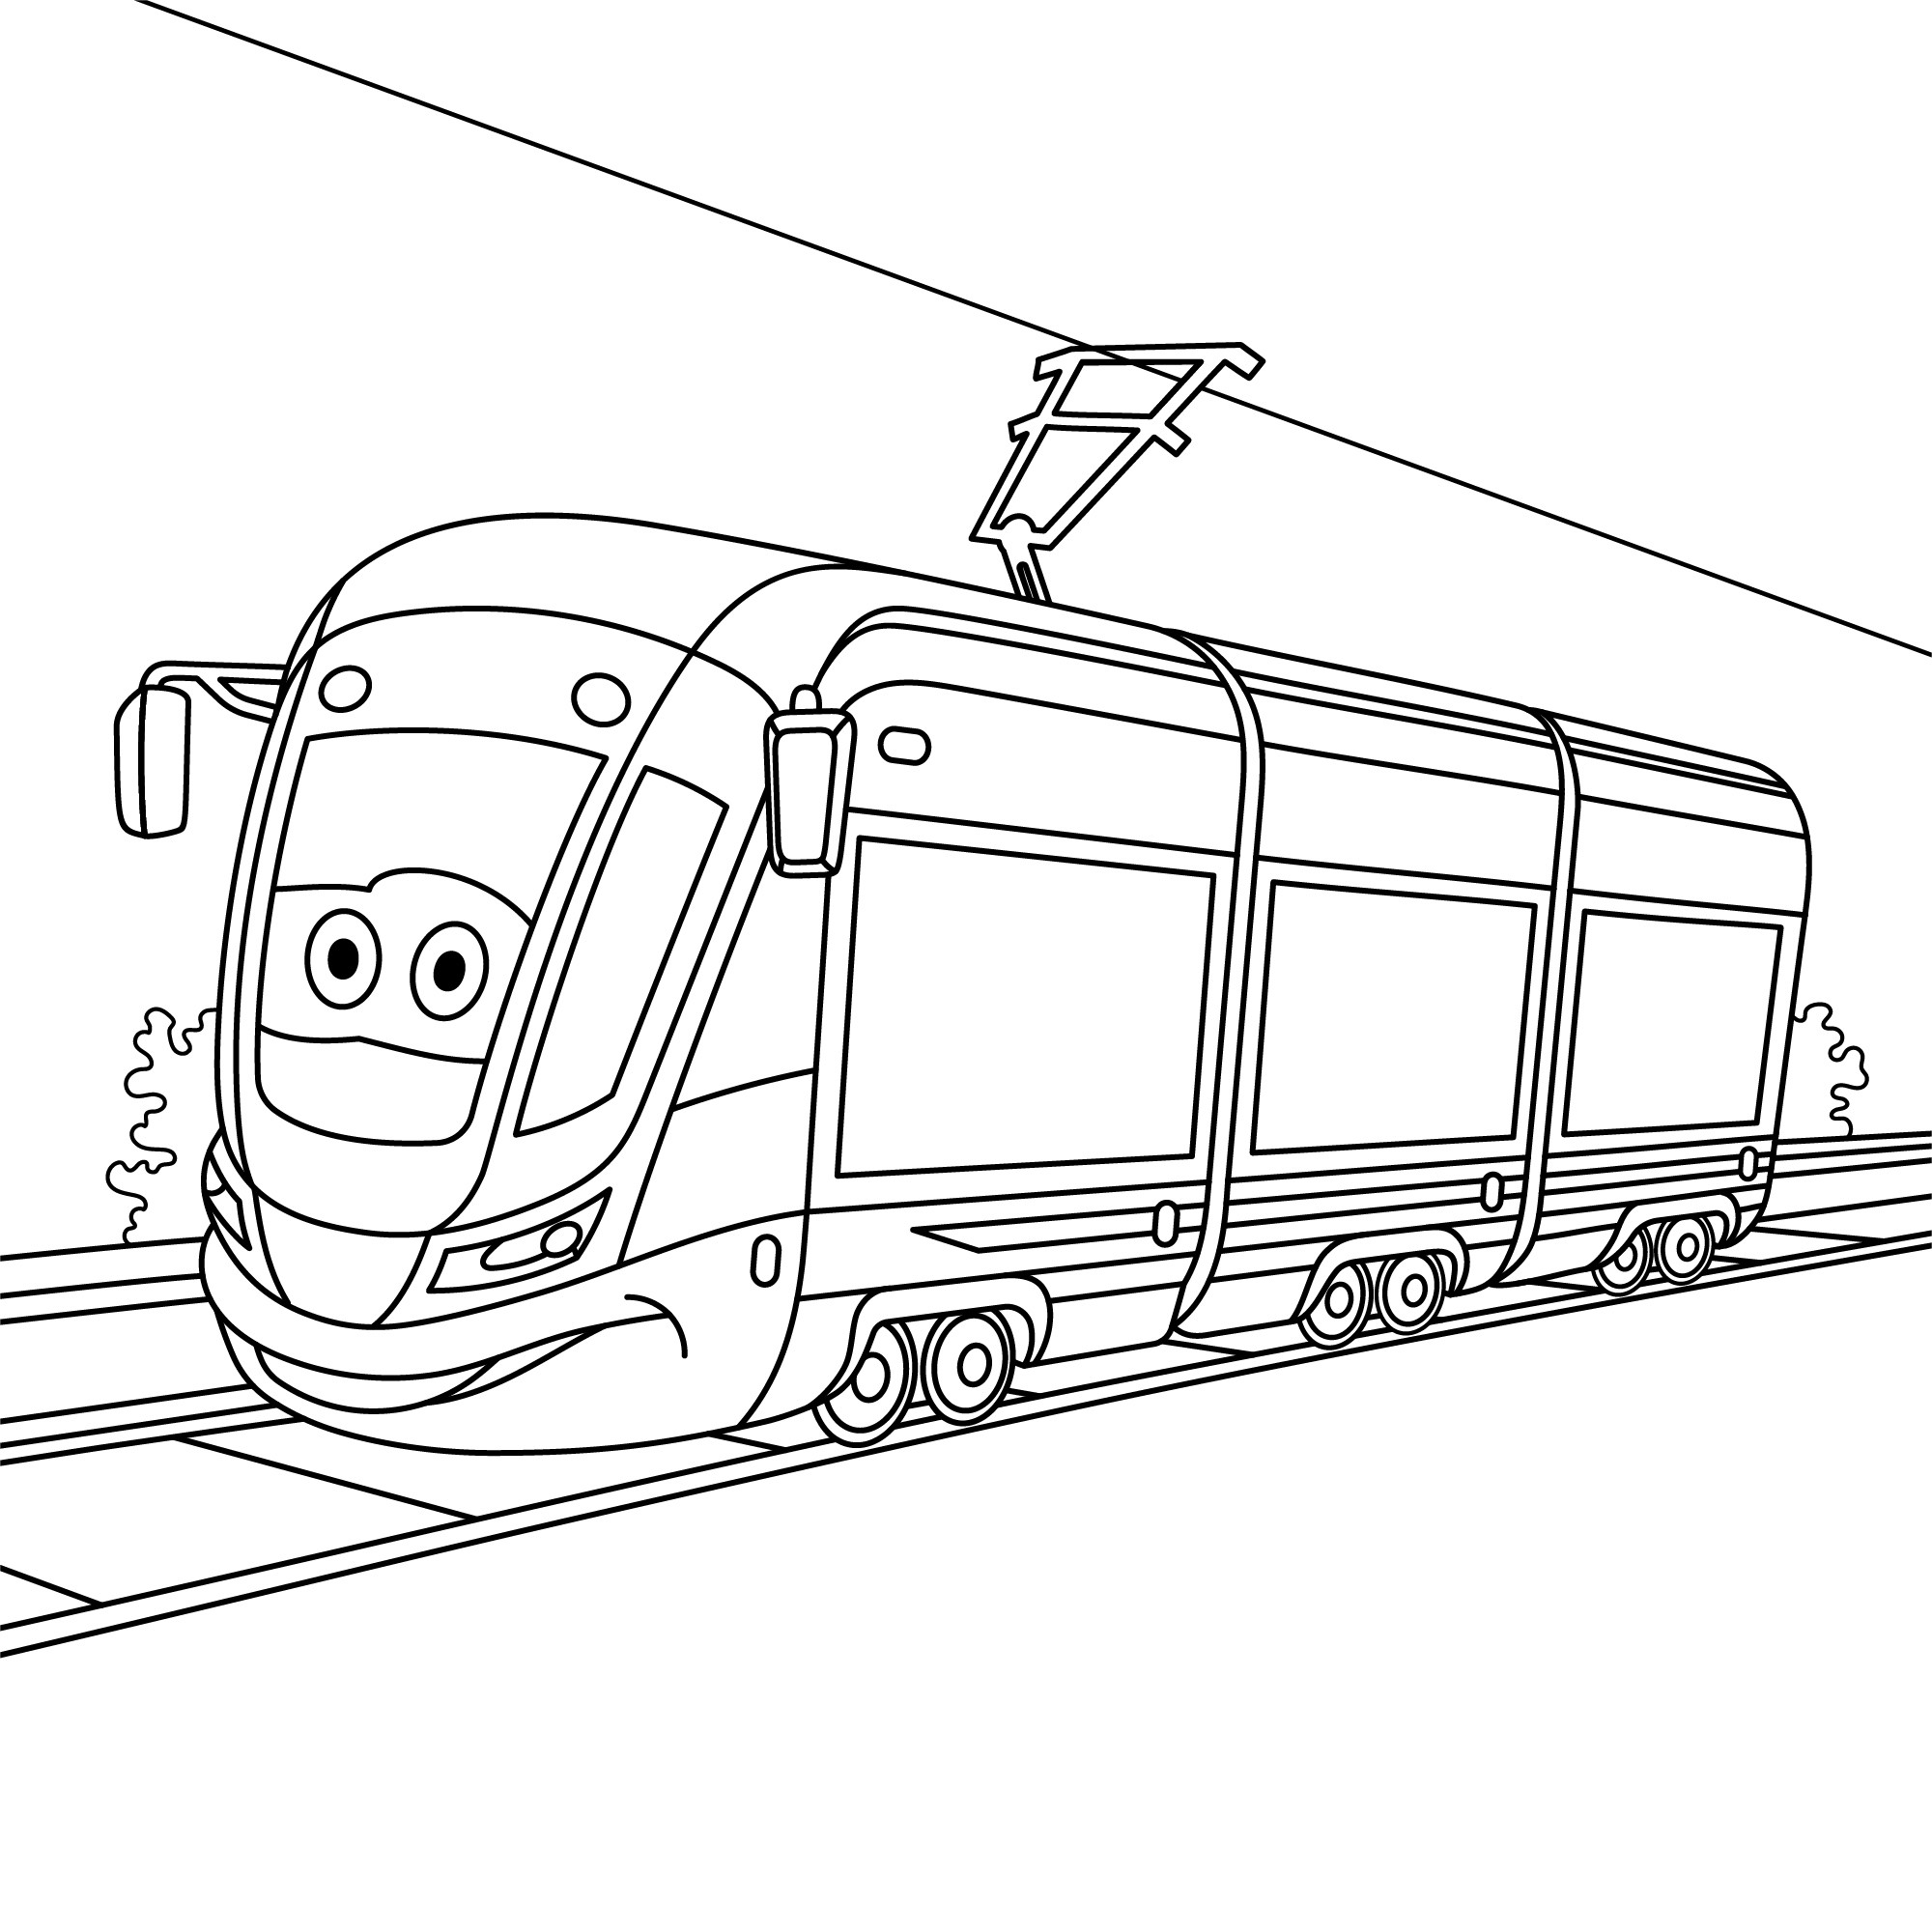 Раскраска для детей: игрушечный трамвай с лицом